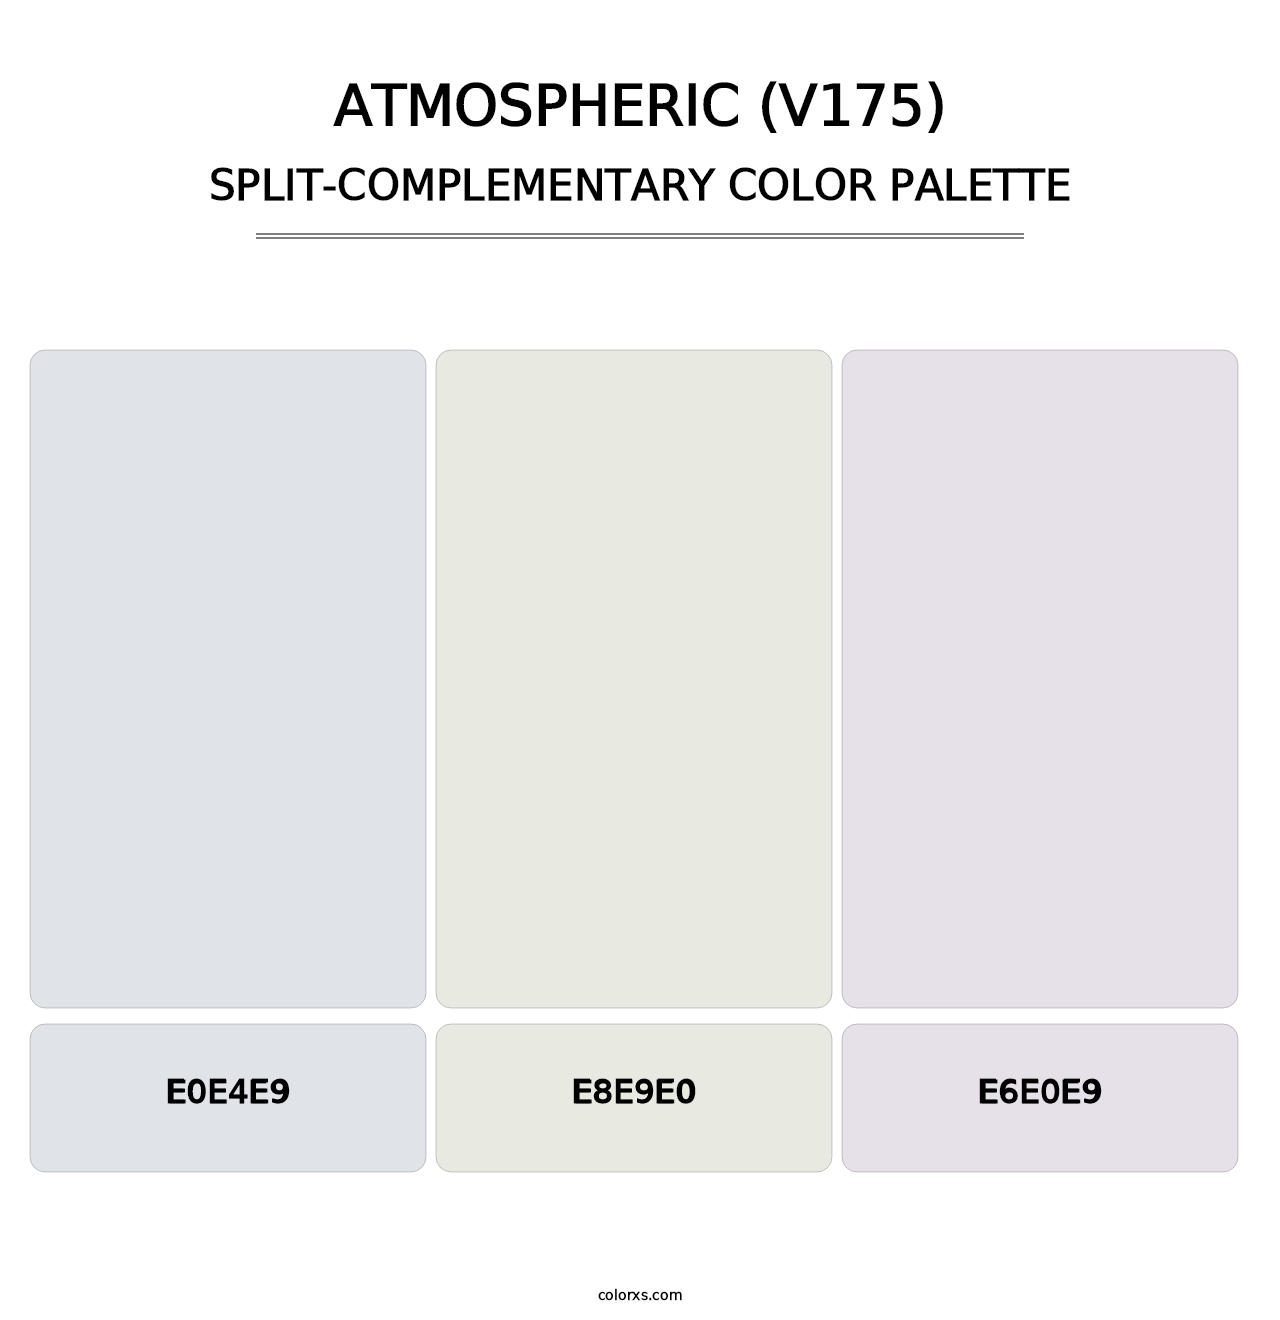 Atmospheric (V175) - Split-Complementary Color Palette